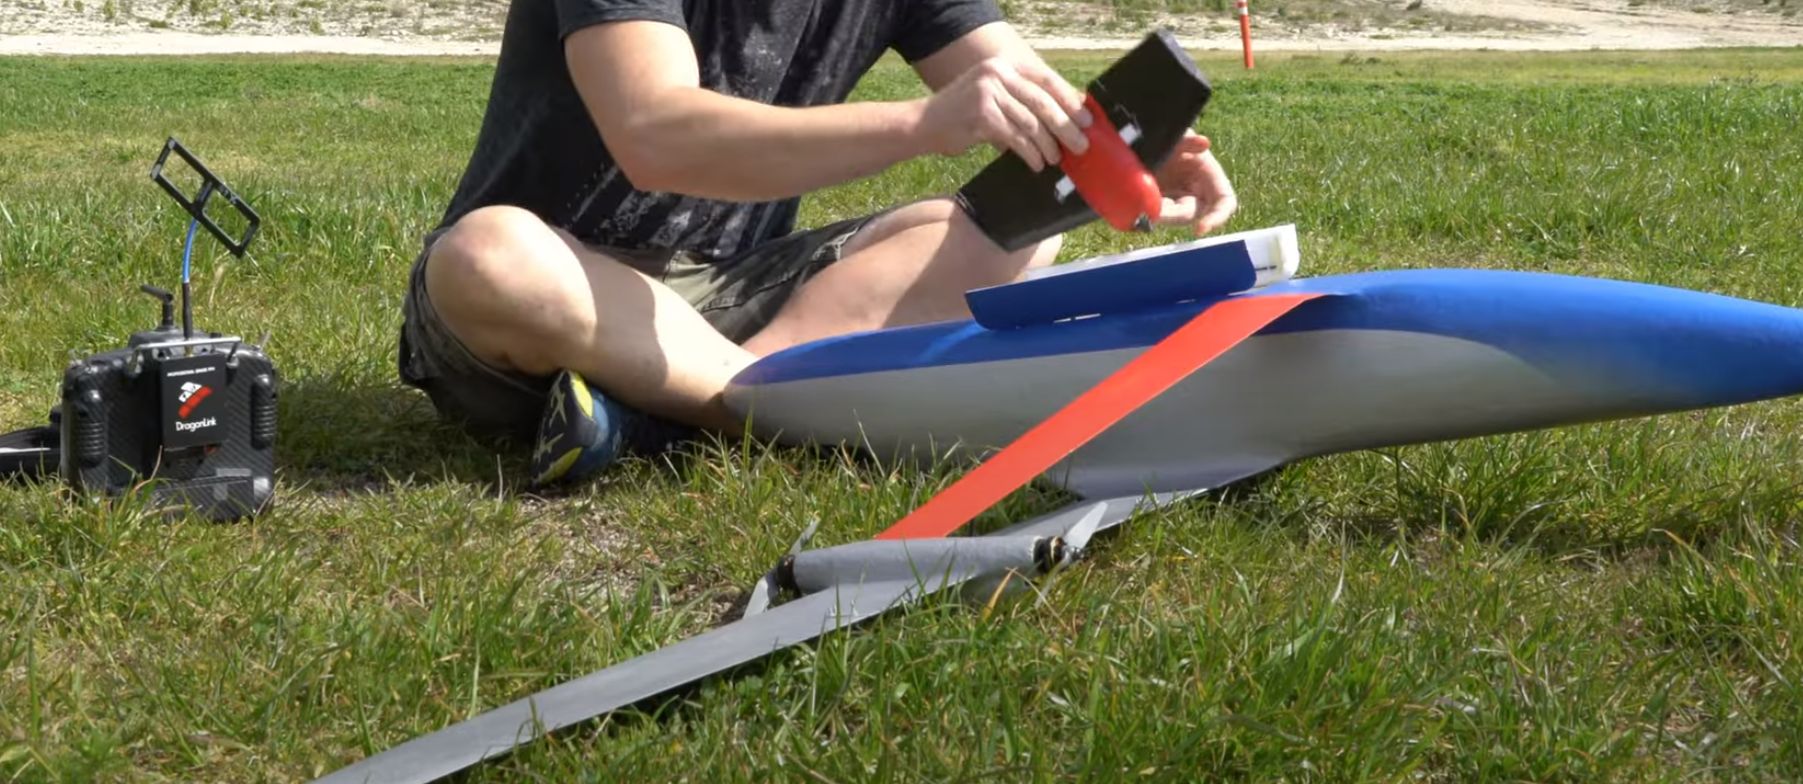 Construir un modelo de avión con trusses: ¿sentido o tontería?